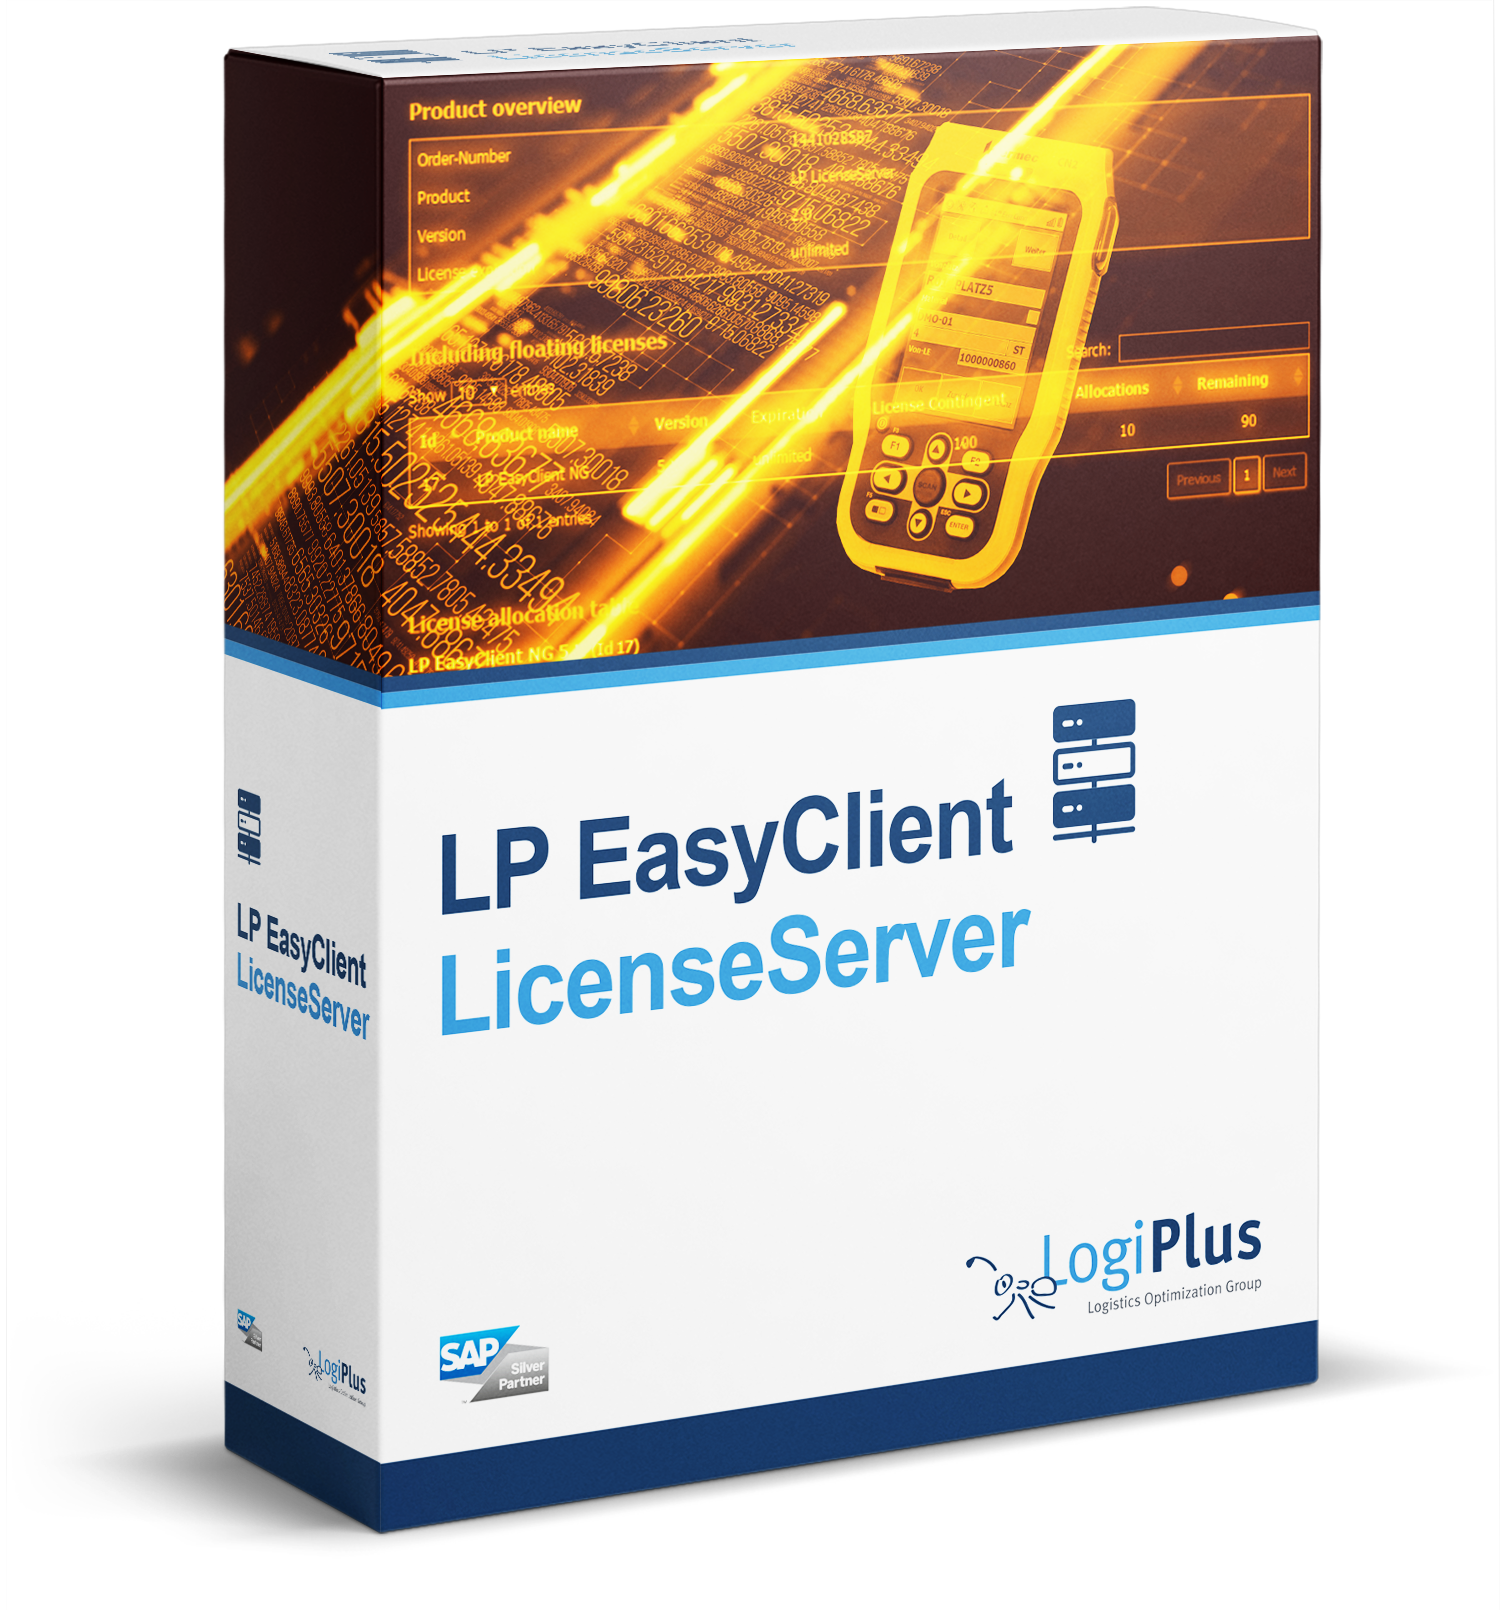 LP EasyClient NG License Server